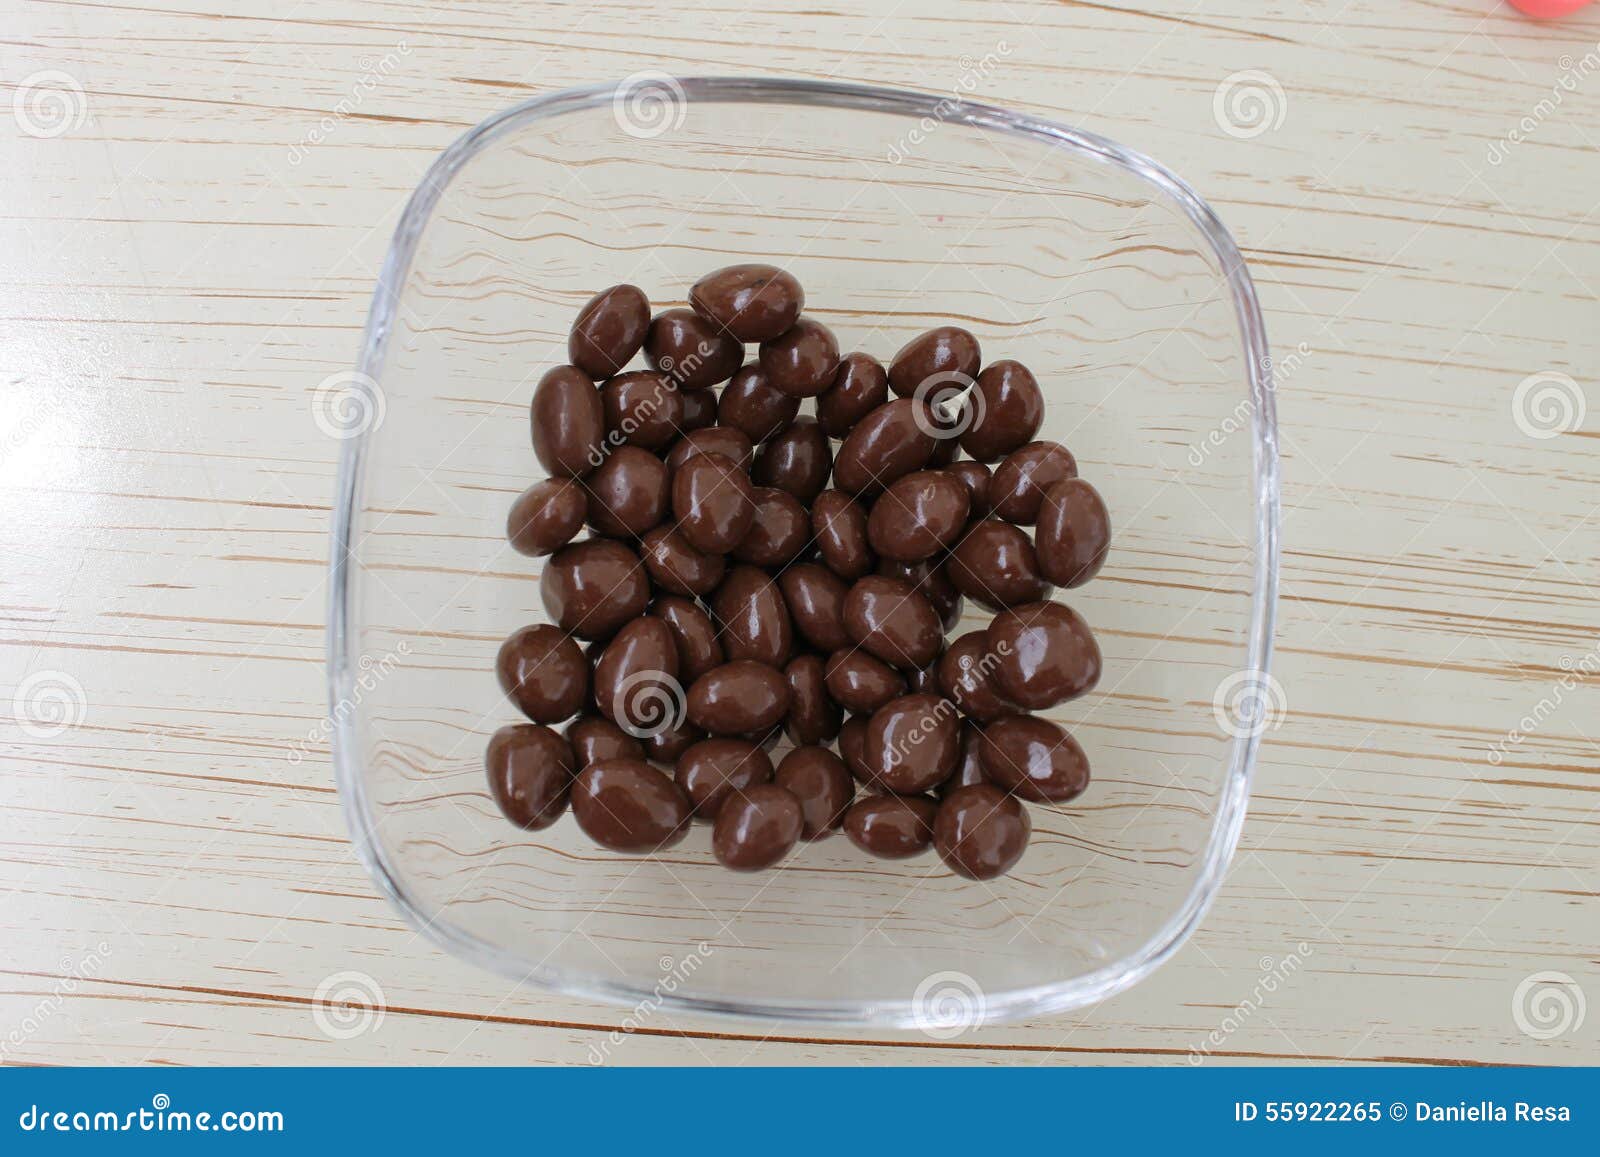 delicious chocolate raisins